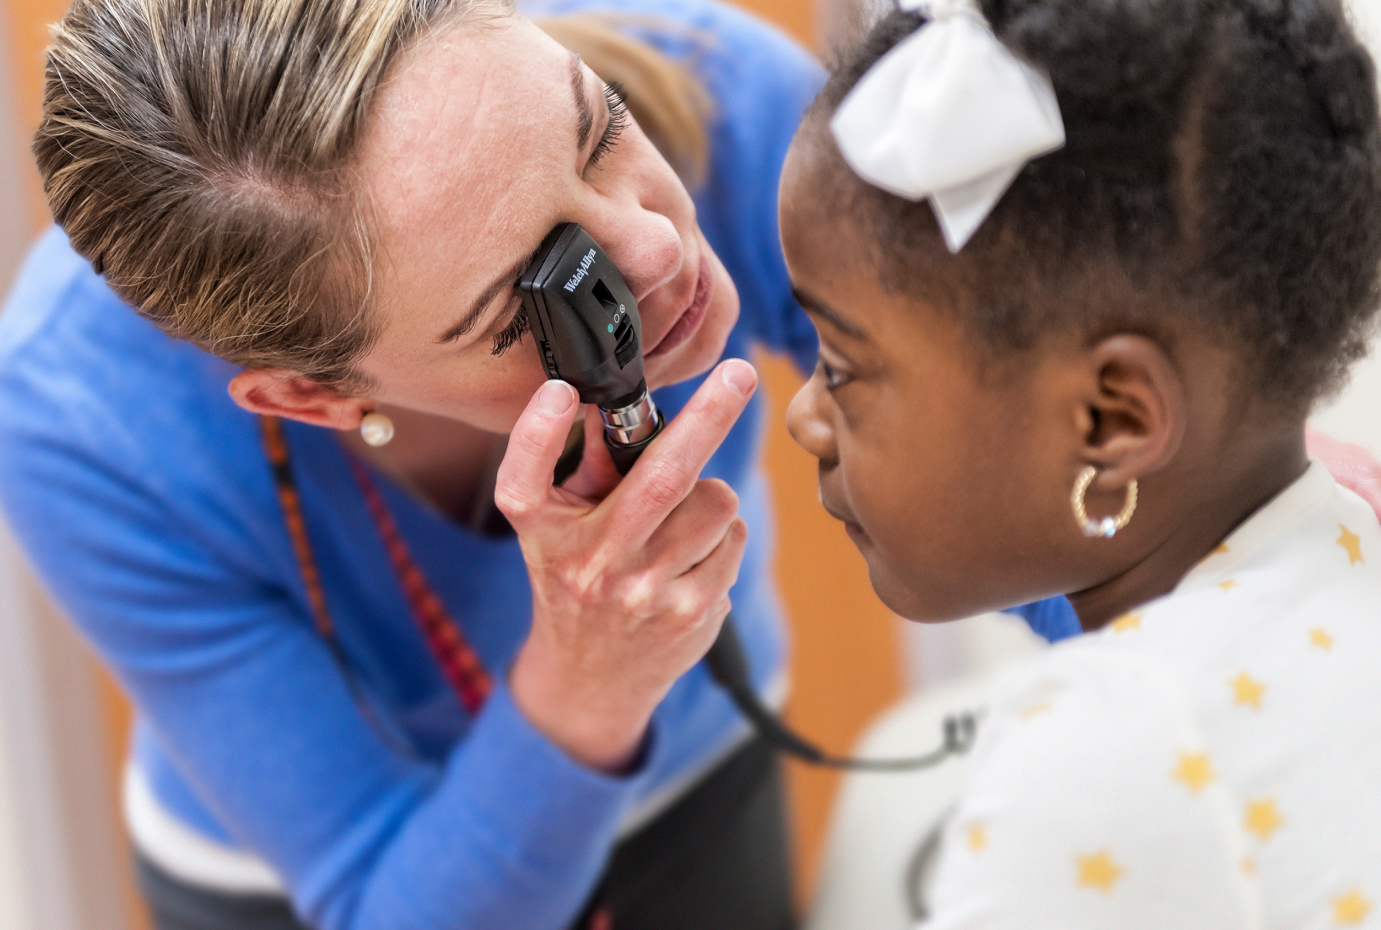 Provider examining childs eye